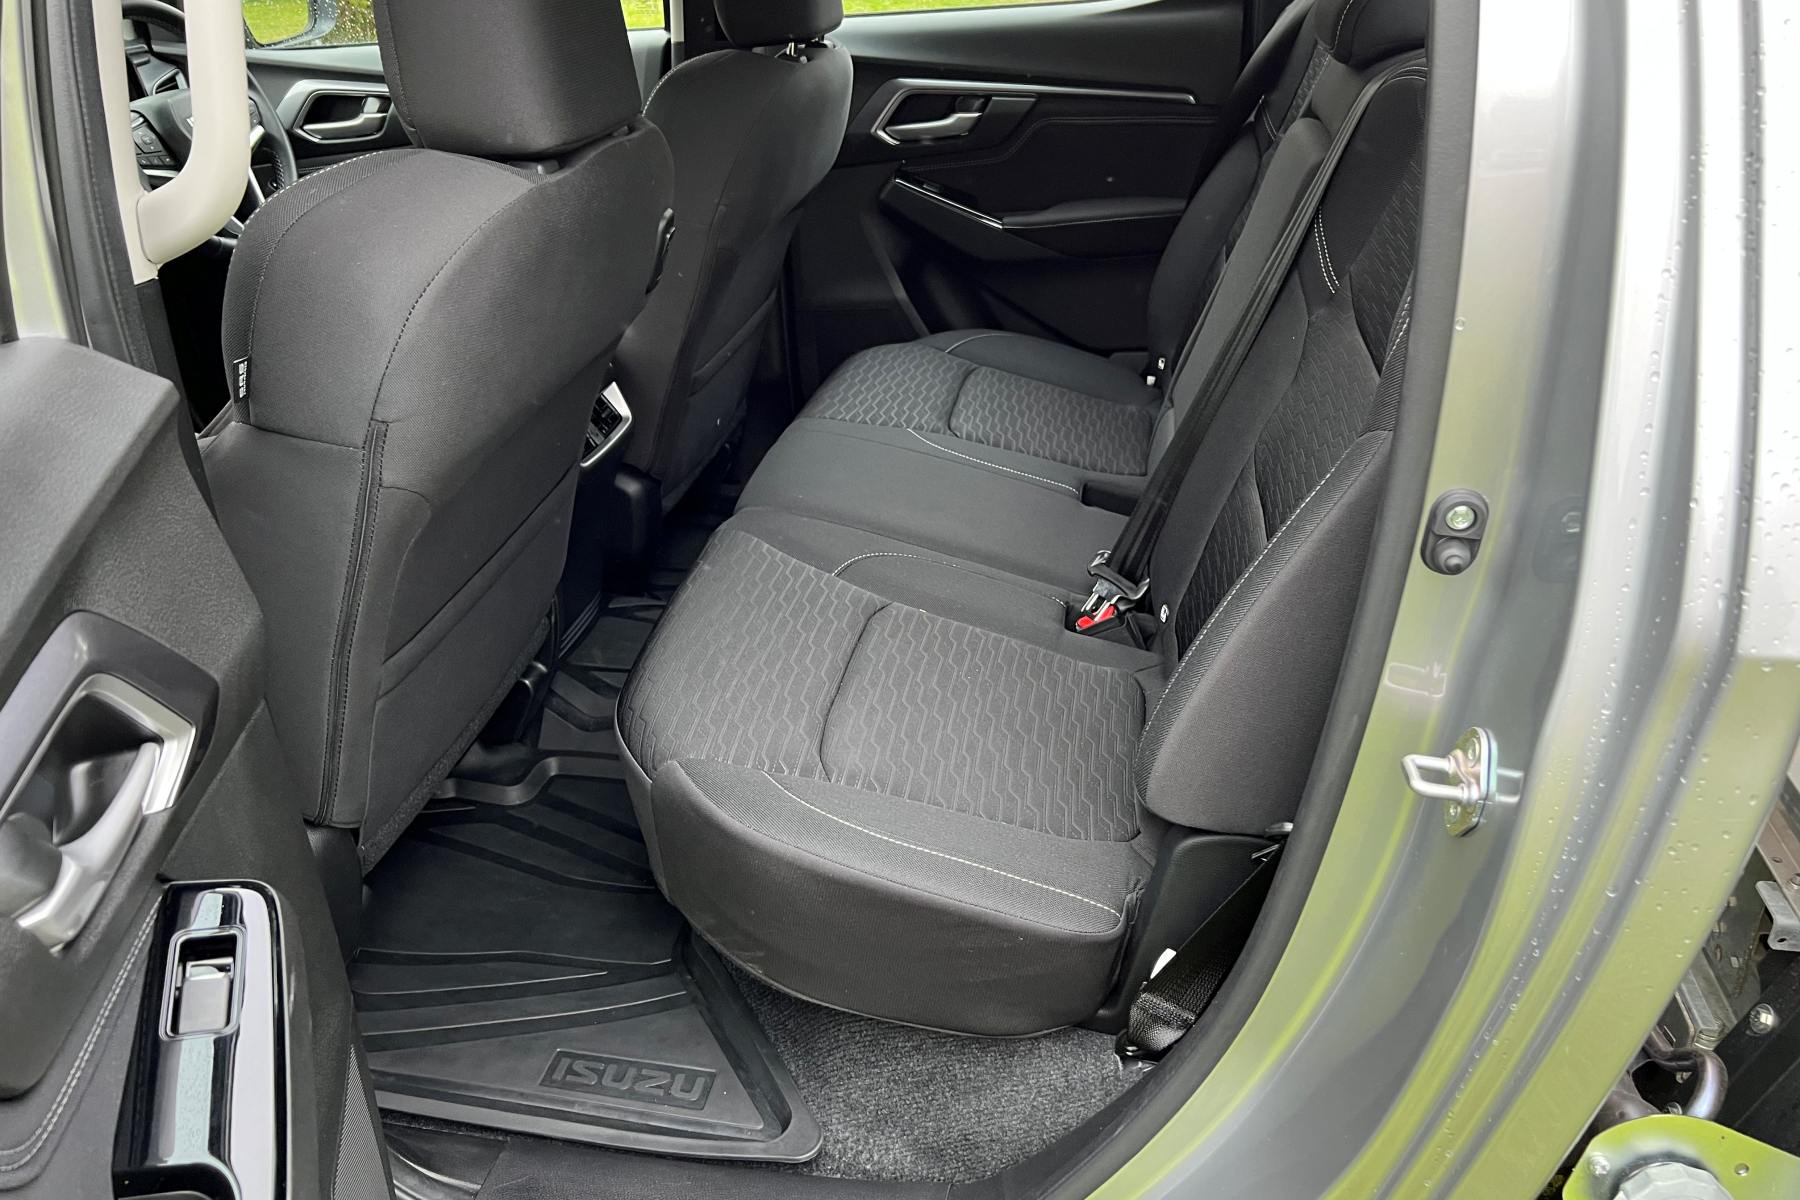 Isuzu D-Max LS-U Dual Cab Trayback 4WD Ute rear seats